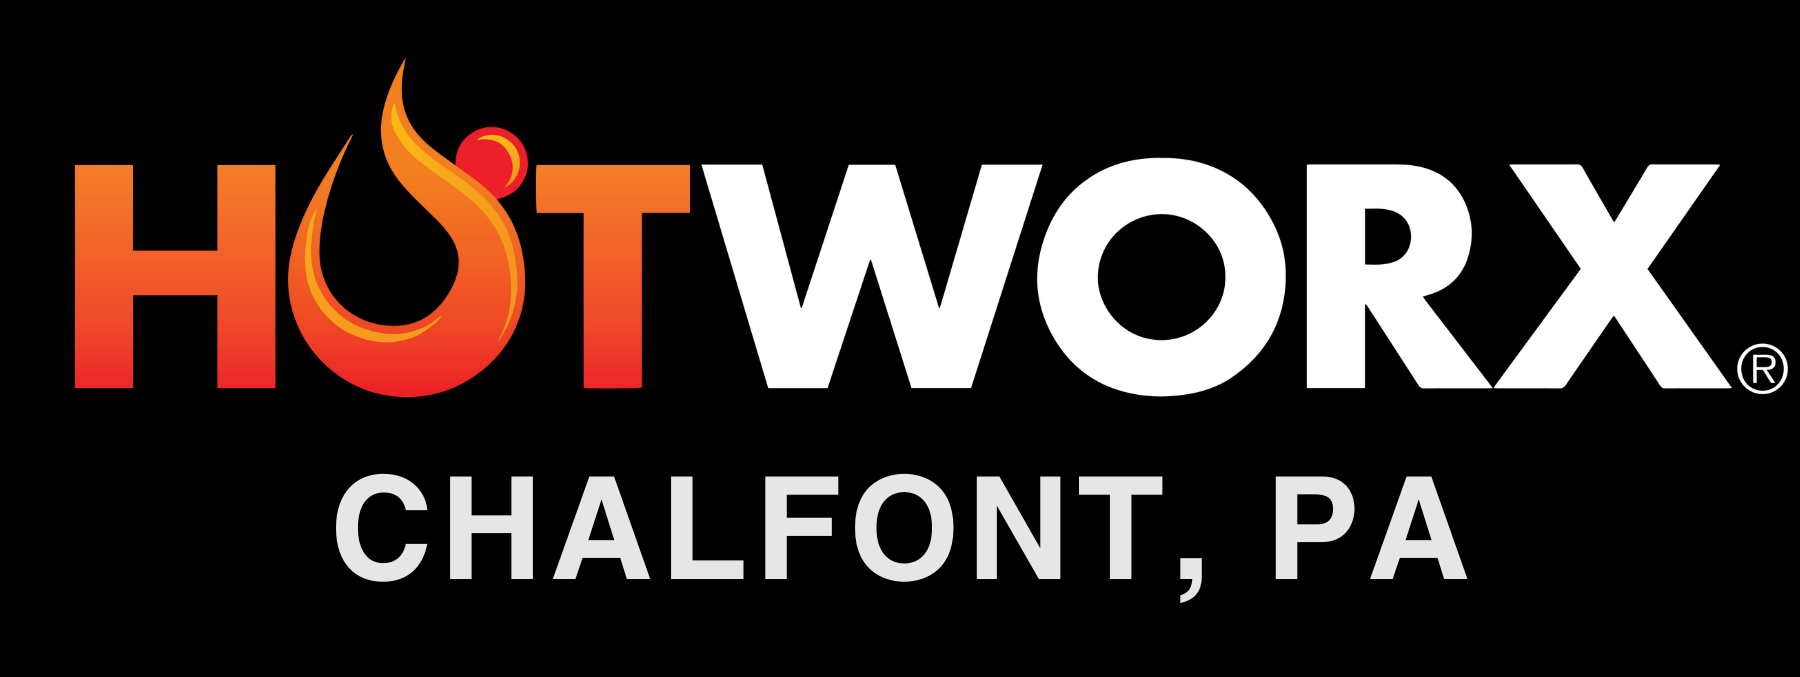 HOTWORX Chalfont logo